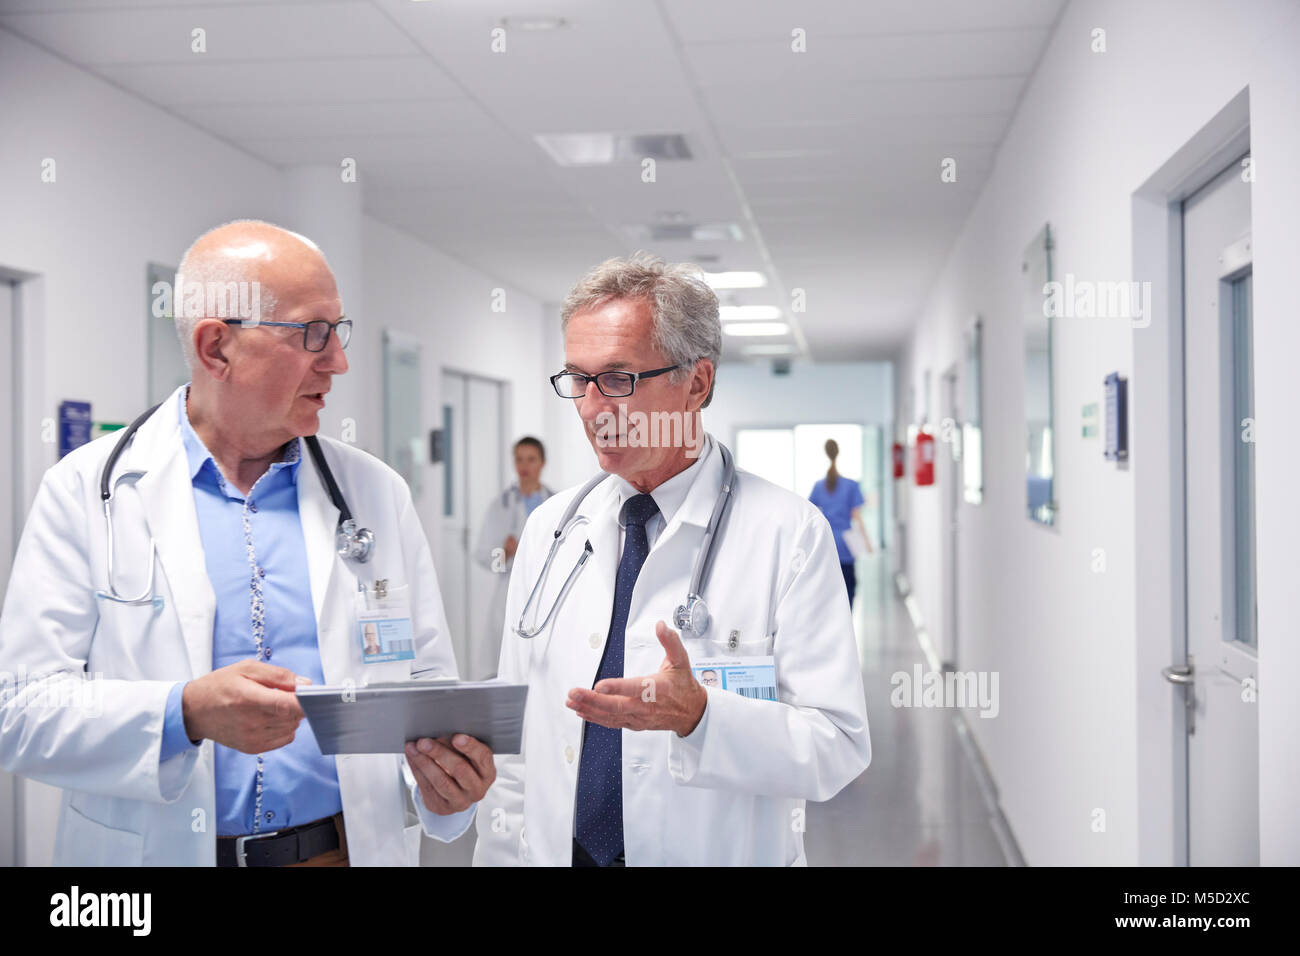 Männliche Ärzte mit Zwischenablage Umläufe bilden, sprechen im Krankenhaus Flur Stockfoto